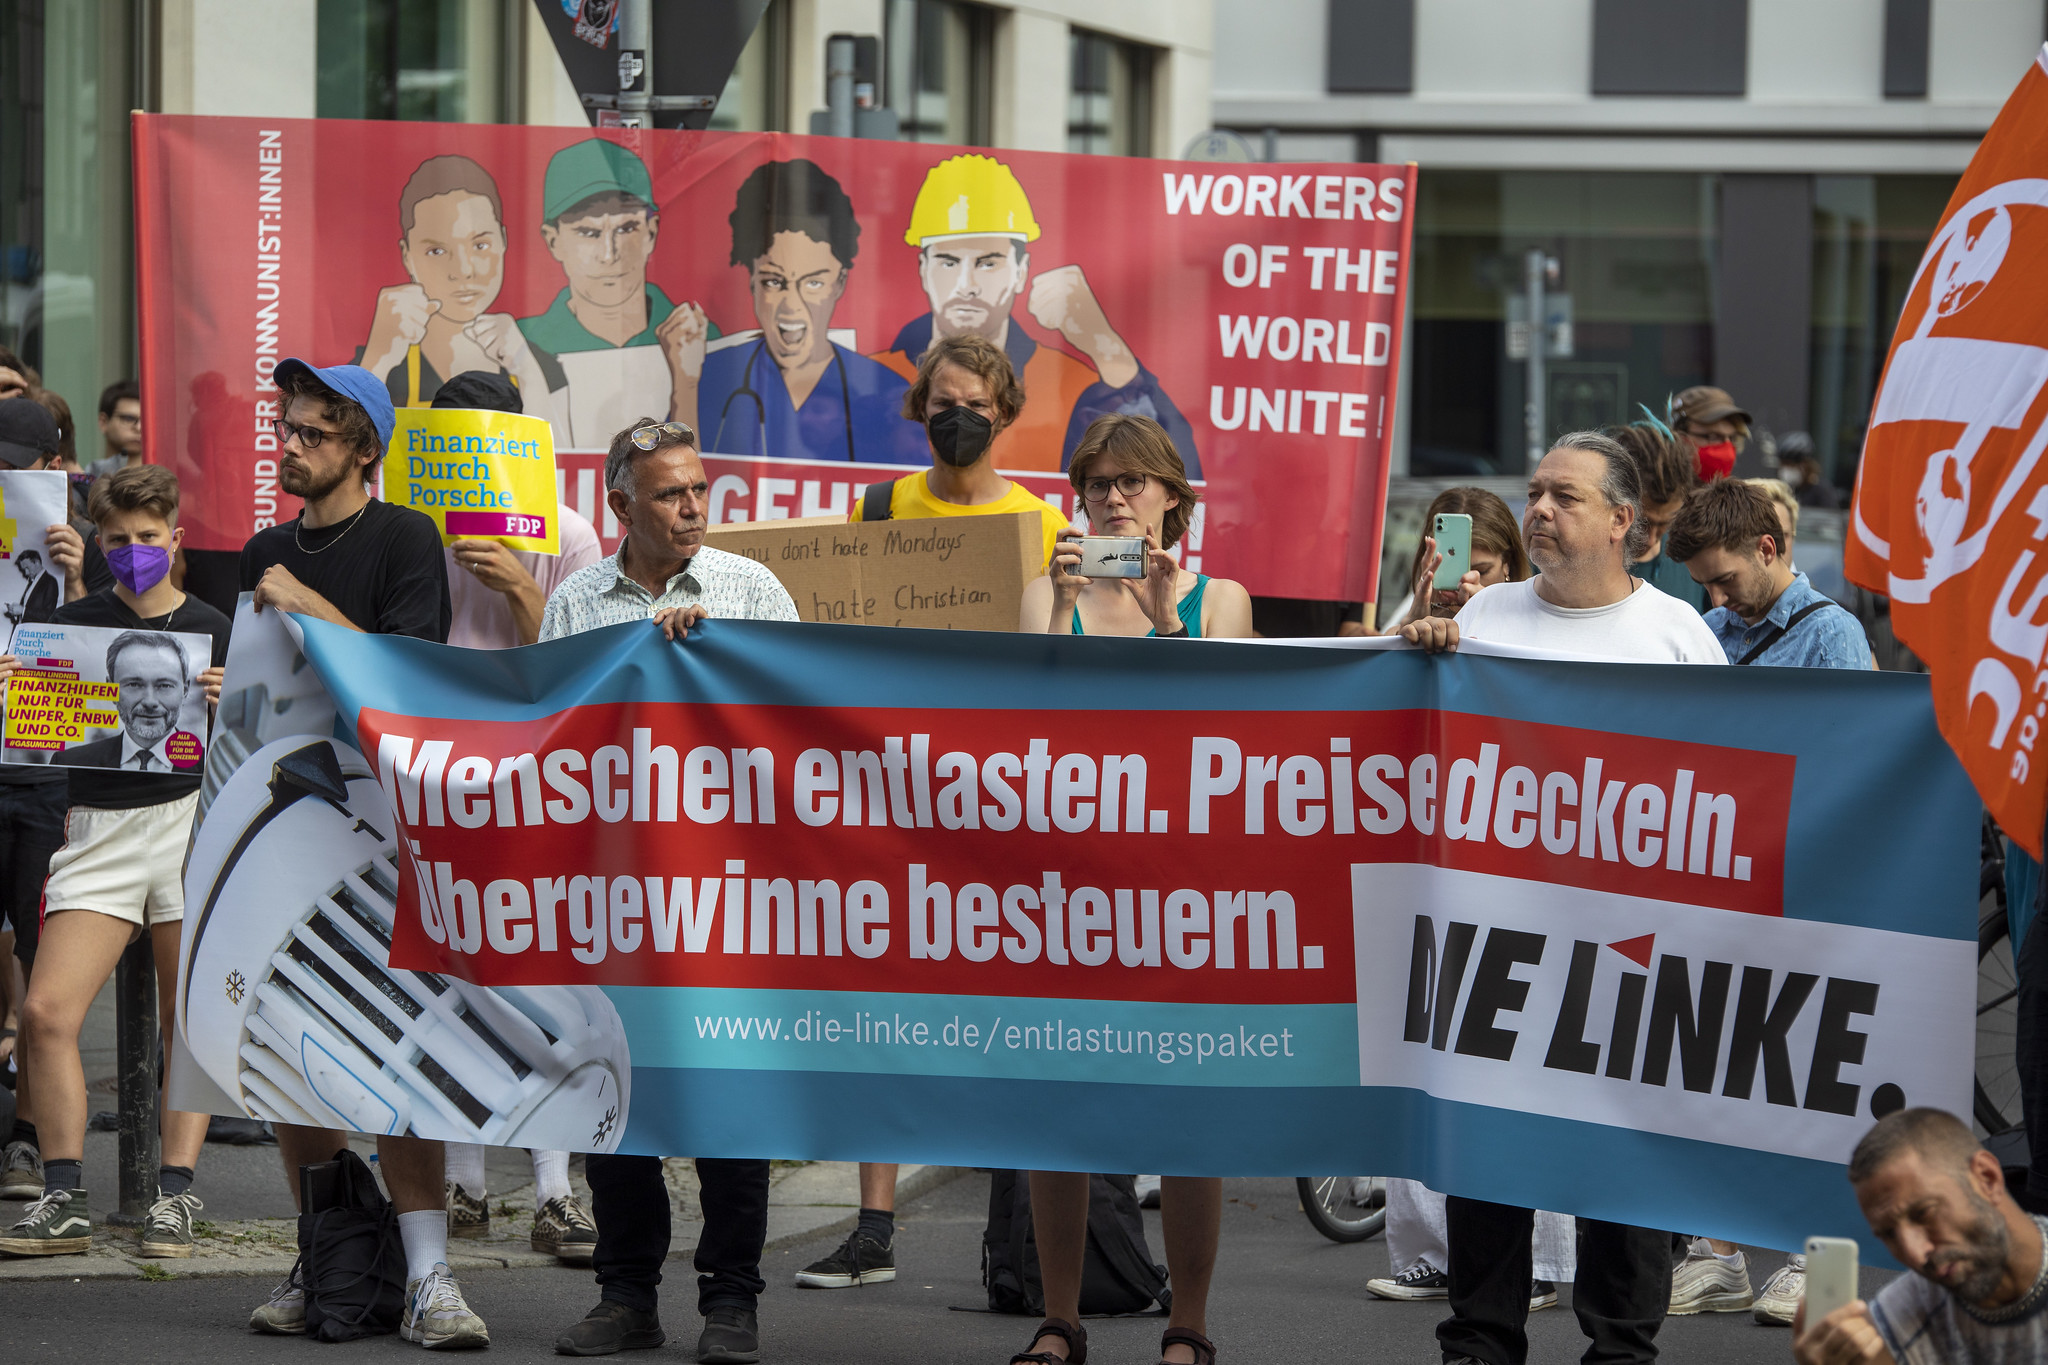 Foto von Protest vor FDP. Menschen halten ein Banner auf dem steht "Menschen entlasten. Preise deckeln. Übergewinne besteuern. DIE LINKE"Parteizentrale.